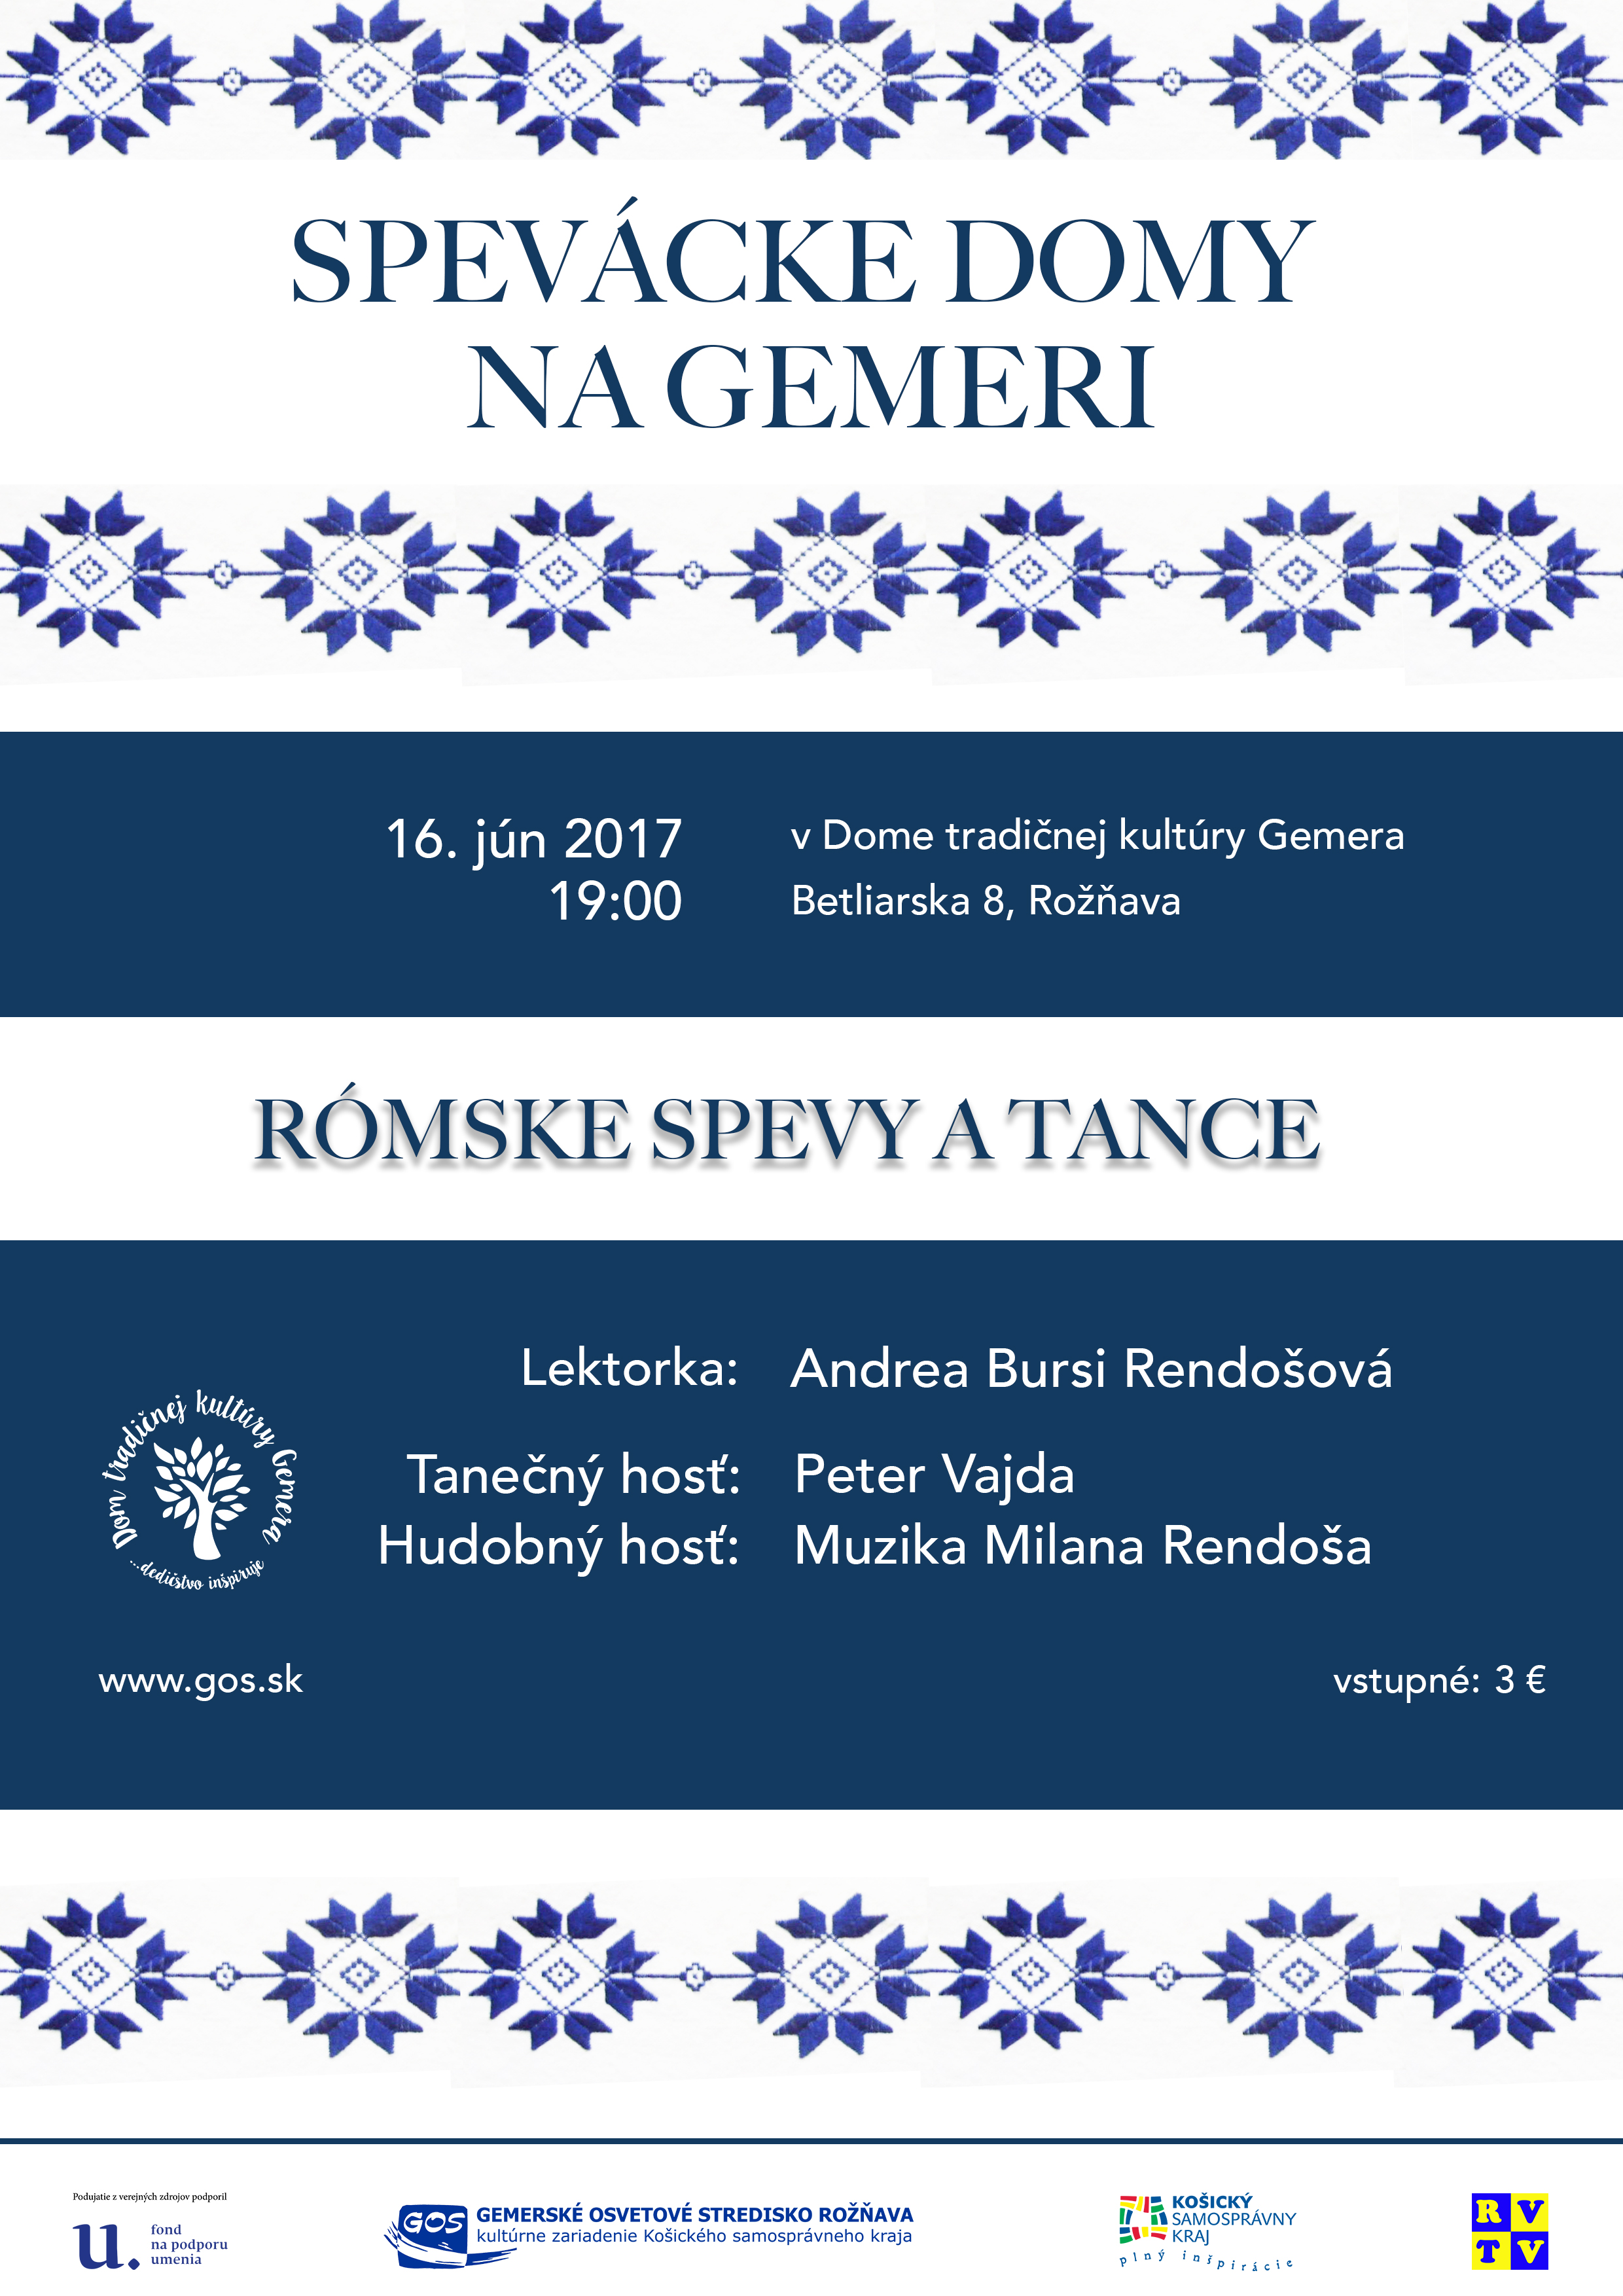 Spevcke domy na Gemeri - Rmske spevy a tance   Roava 2017